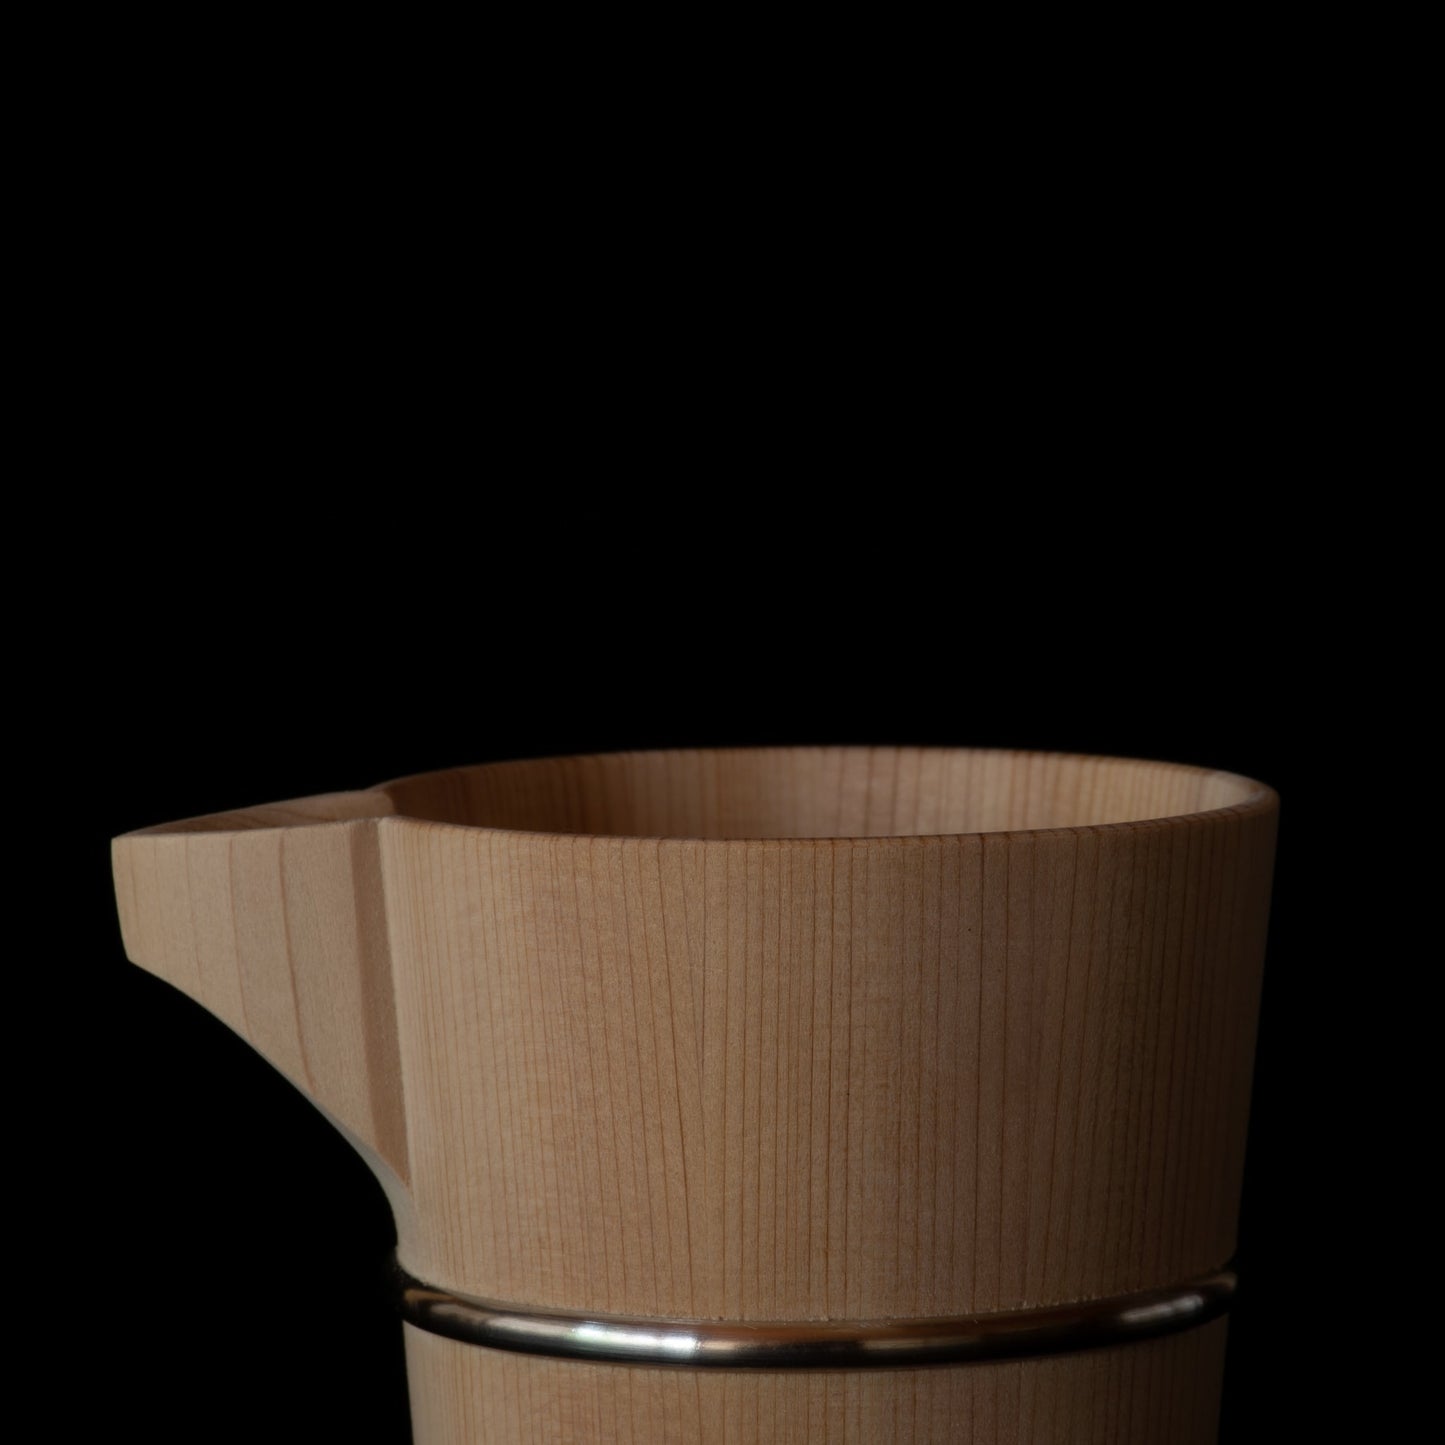 Detail of top of wooden Hinoki sake carafe